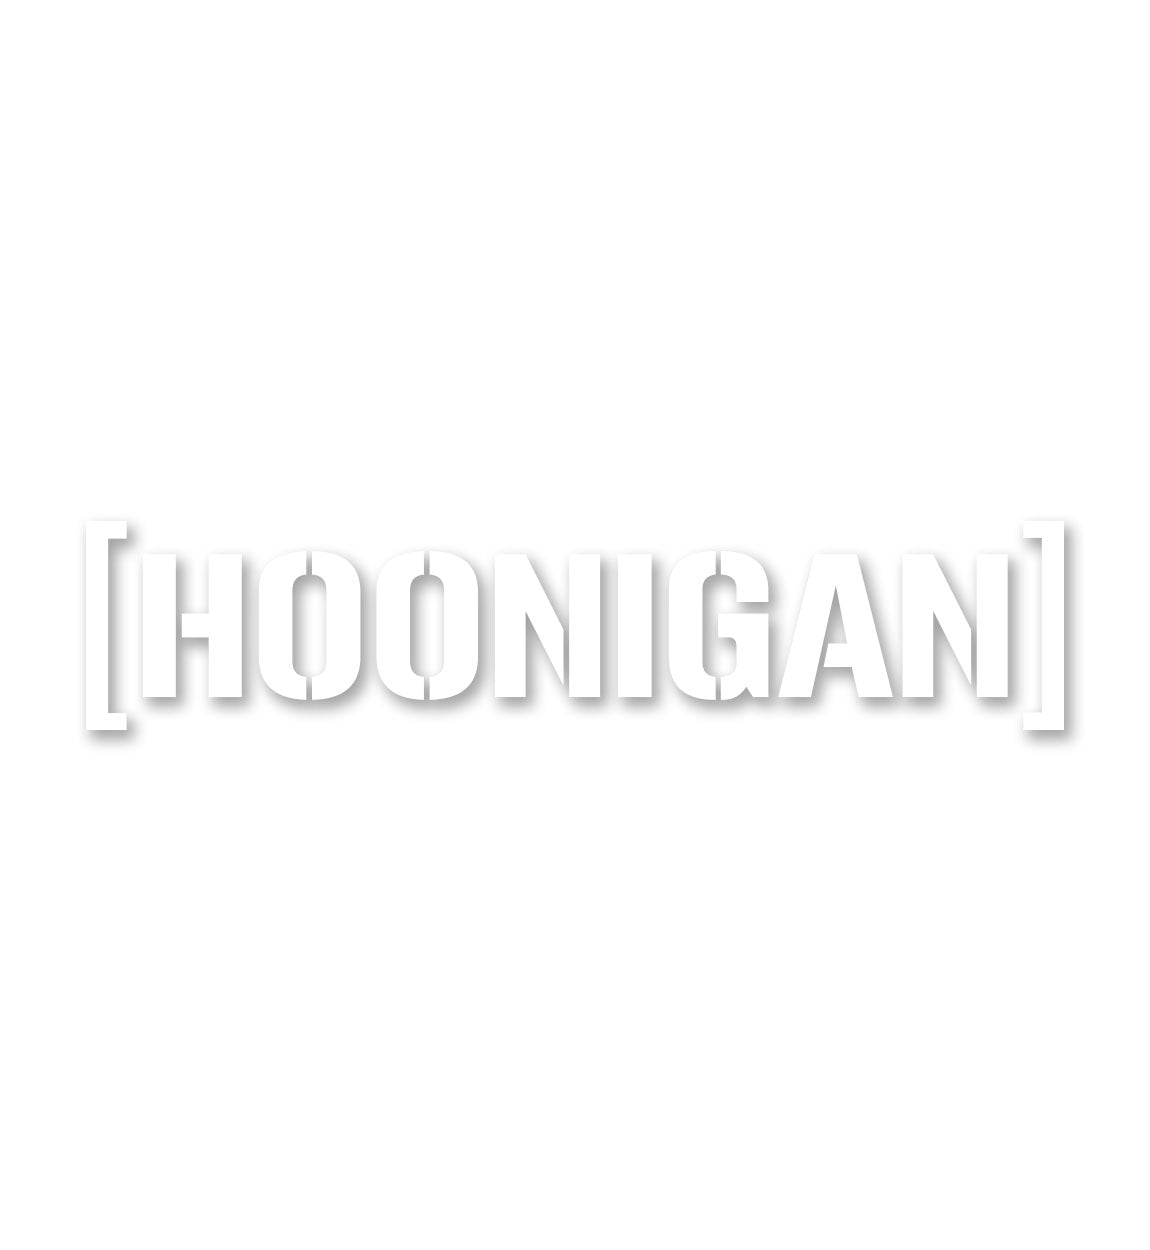 Hoonigan SMALL DIE CUT BRACKET LOGO Sticker (10")